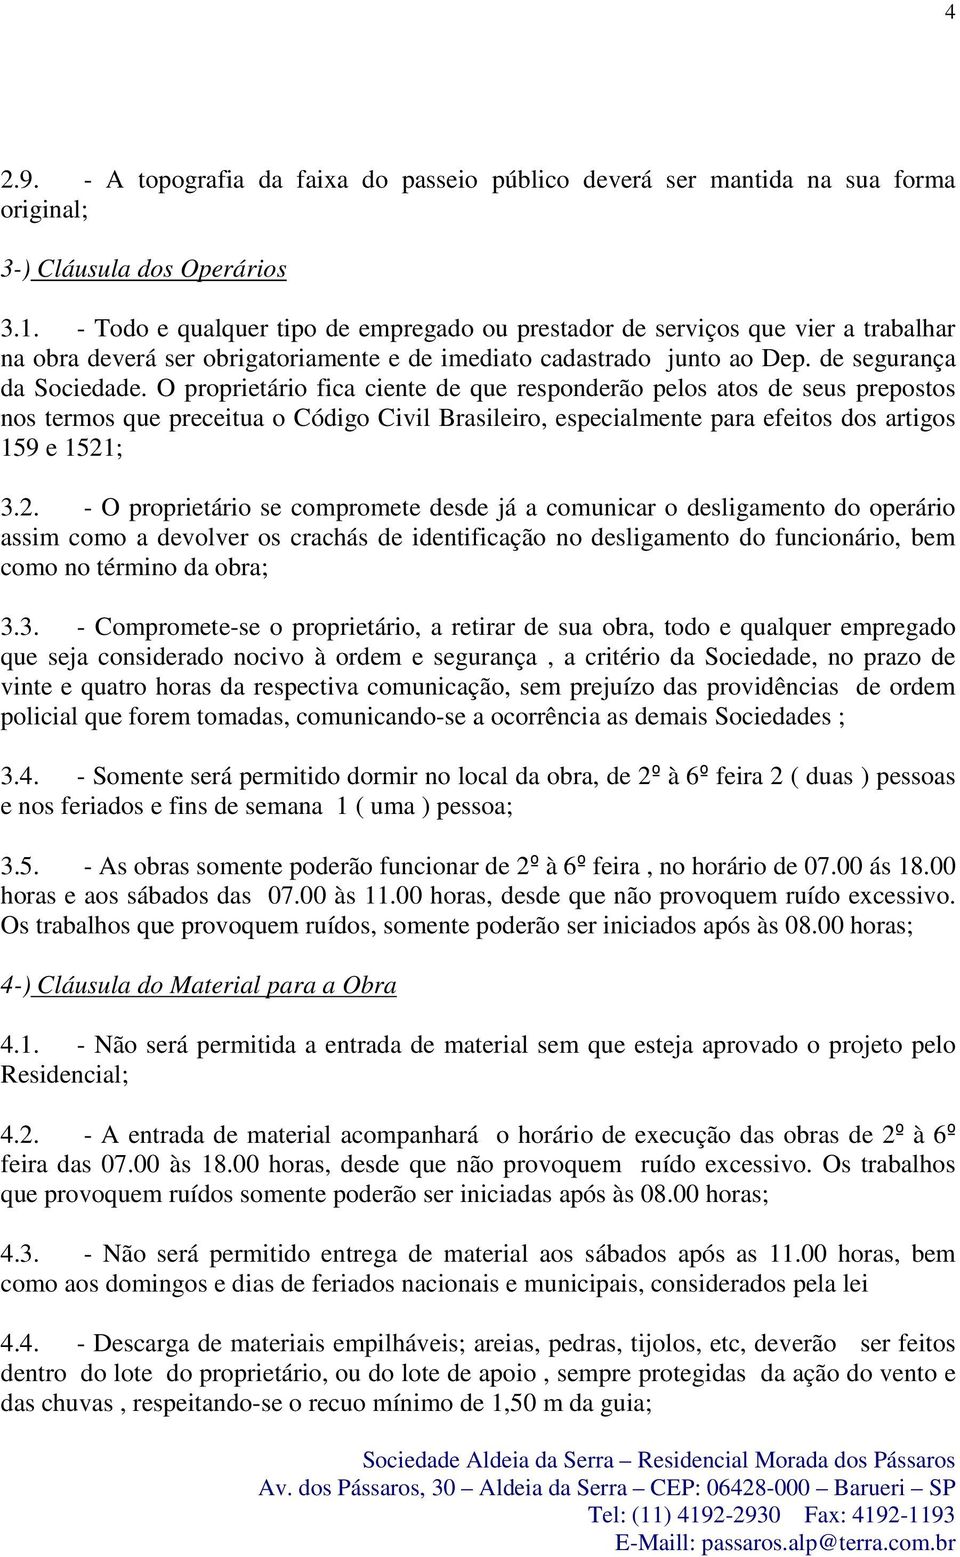 O proprietário fica ciente de que responderão pelos atos de seus prepostos nos termos que preceitua o Código Civil Brasileiro, especialmente para efeitos dos artigos 159 e 1521